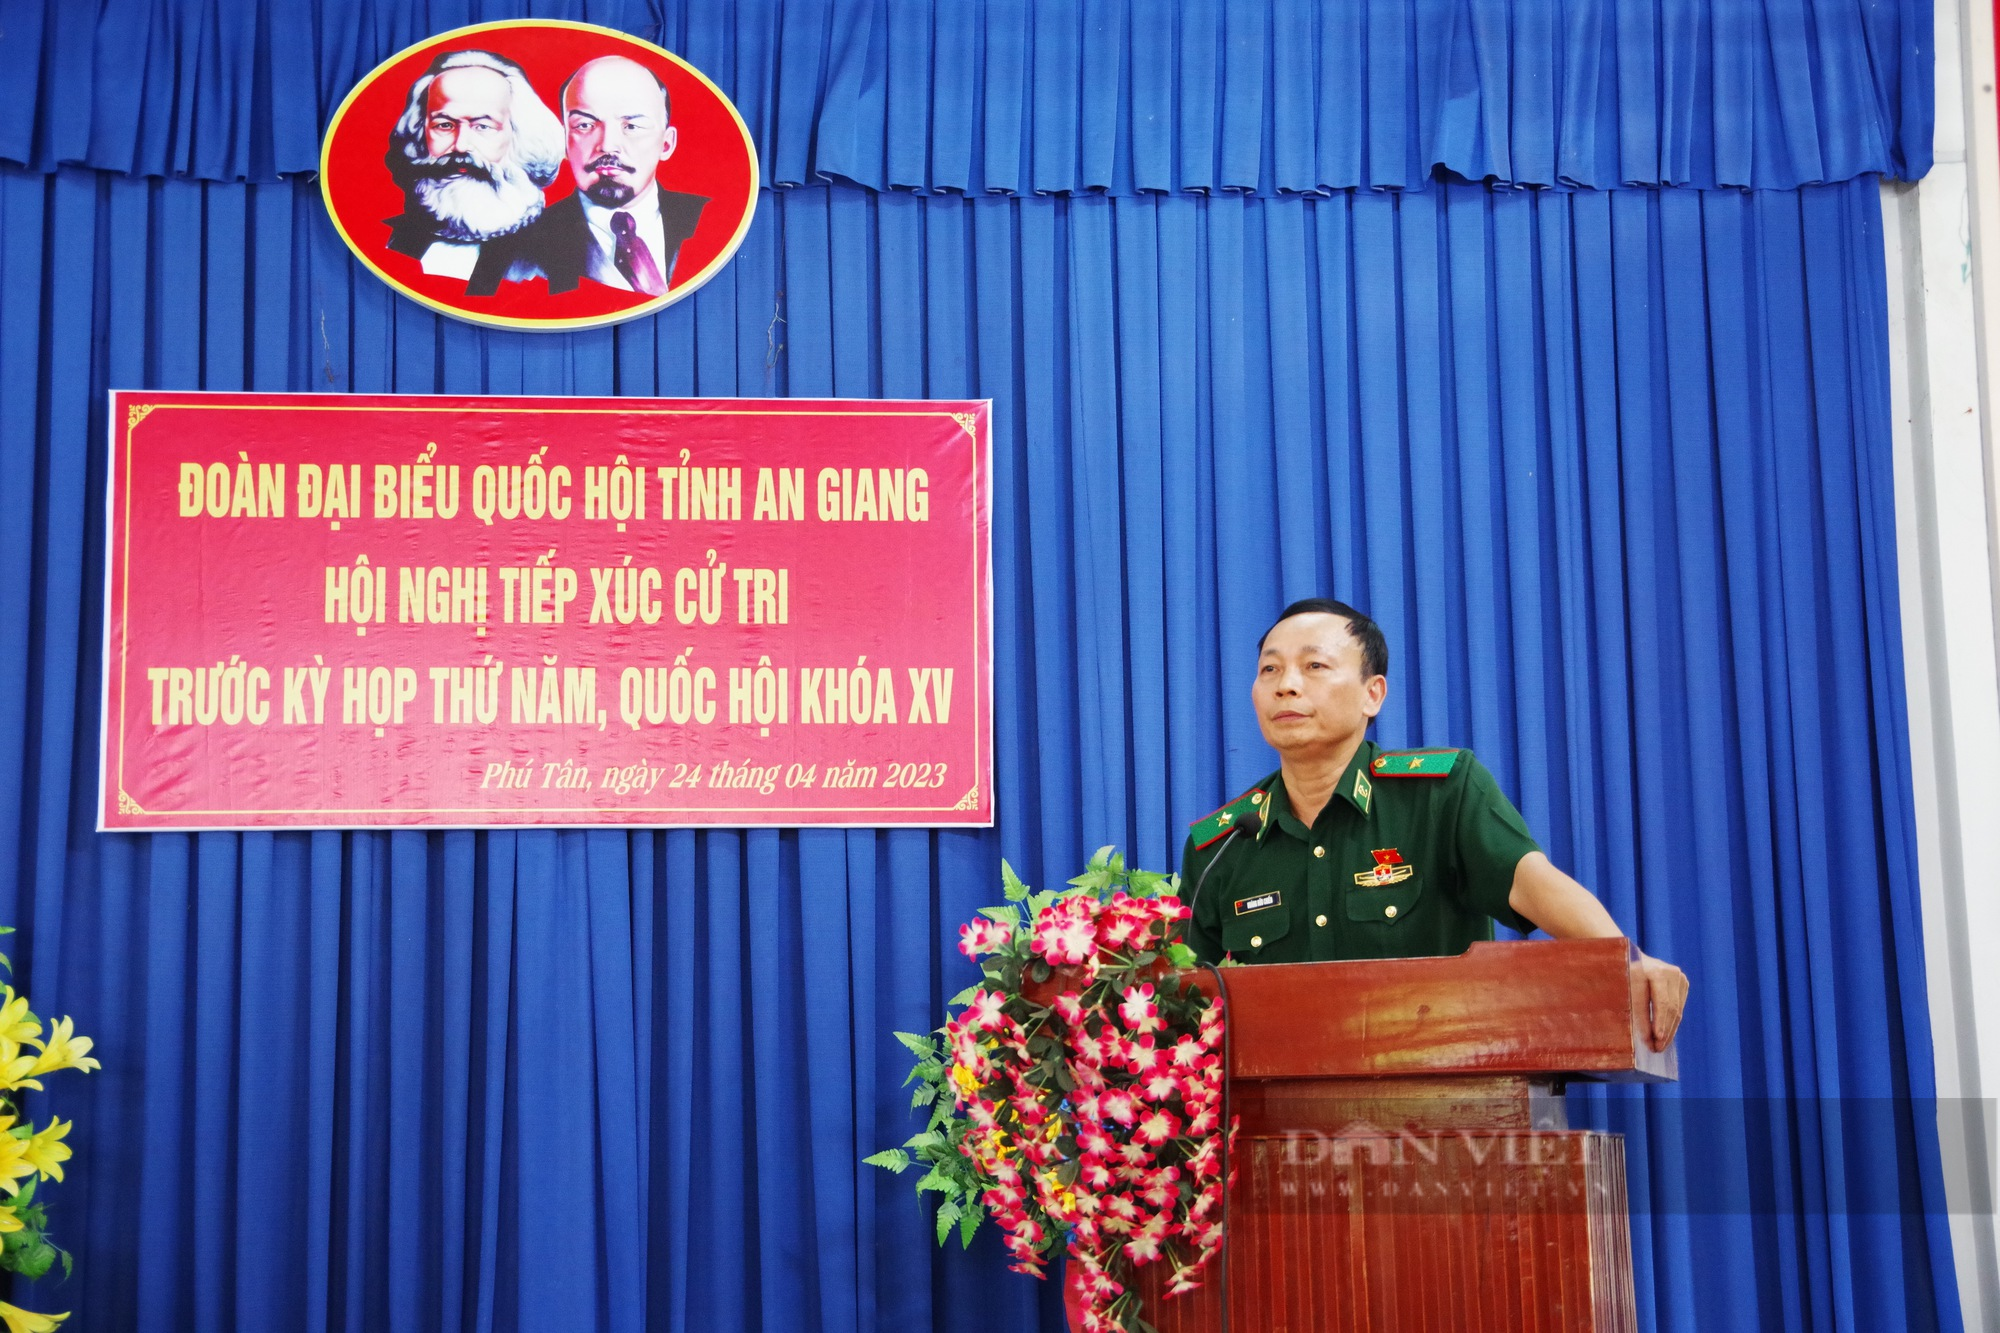 Chủ tịch Hội NDVN và đoàn đại biểu Quốc hội tỉnh An Giang tiếp xúc cử tri huyện Phú Tân  - Ảnh 5.